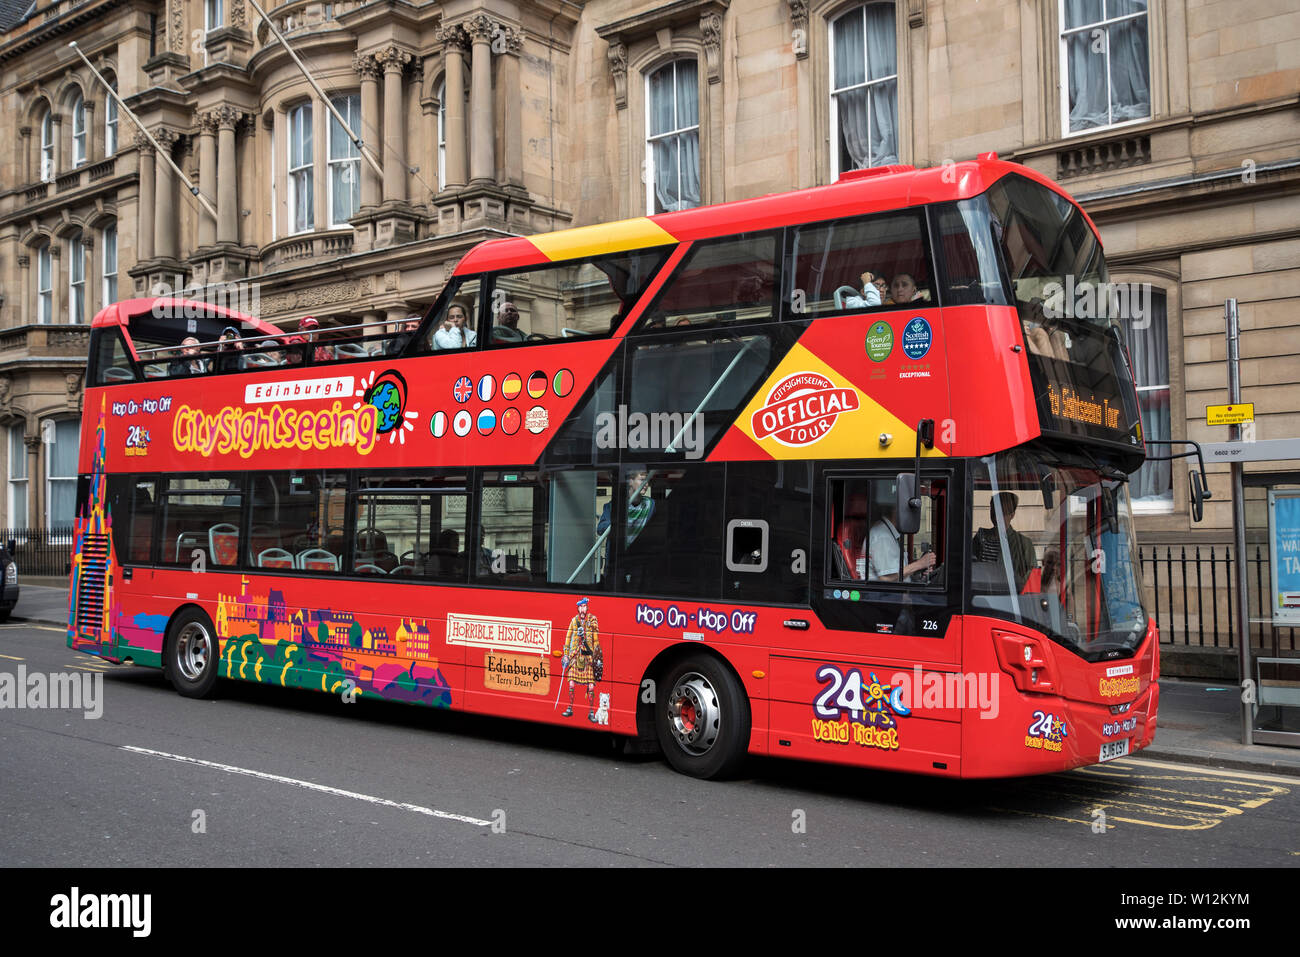 Aperto superiormente e tour della città in autobus in camere Street, Edimburgo, Scozia, Regno Unito. Foto Stock